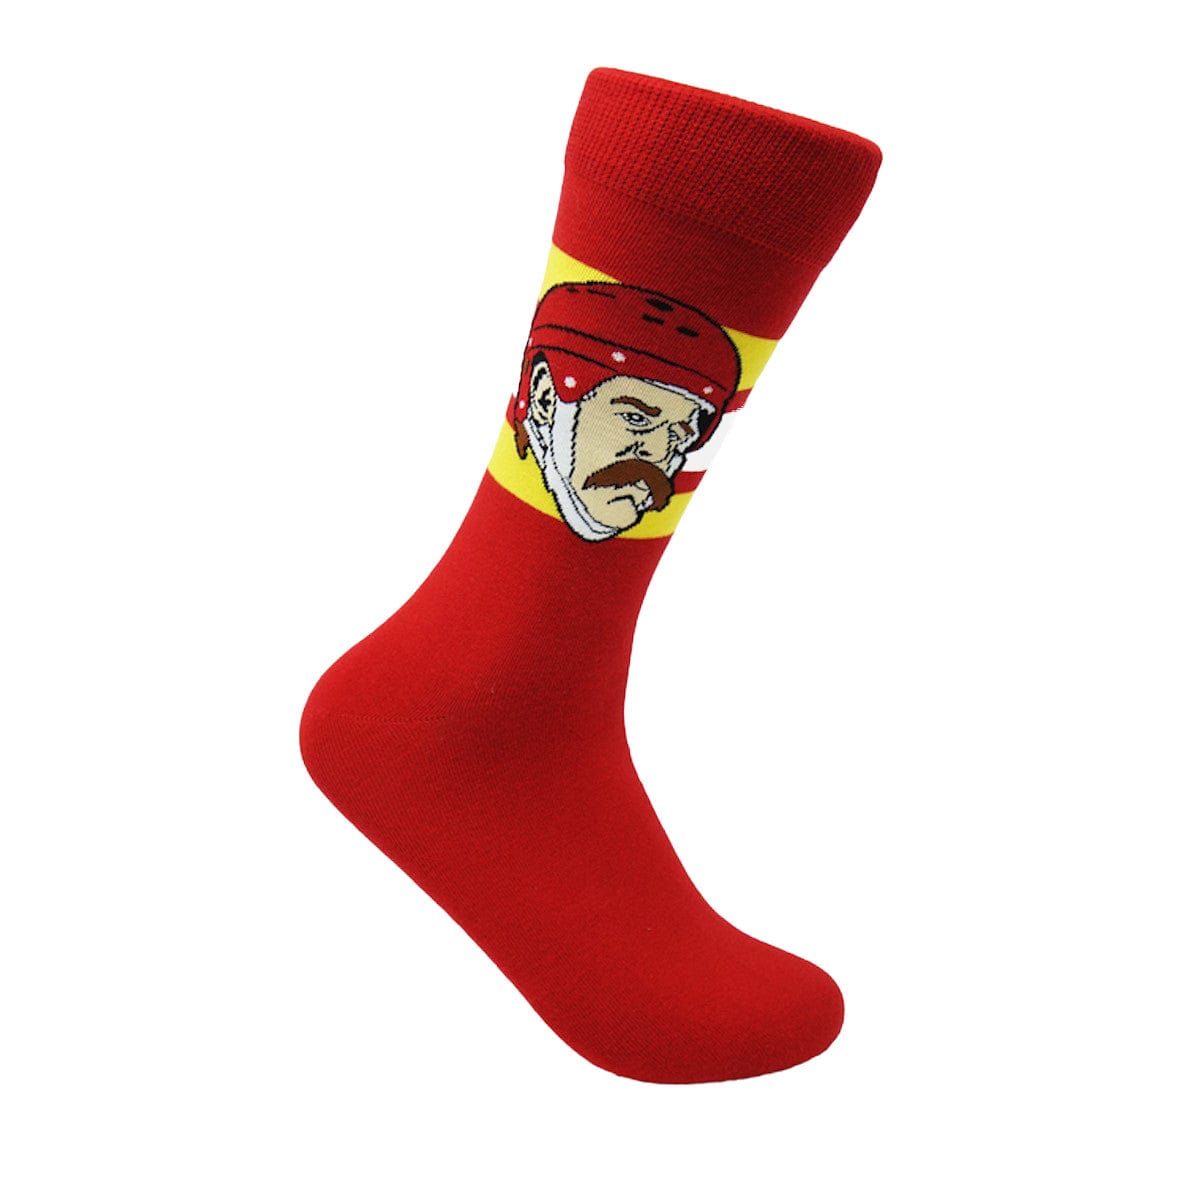 Calgary Flames Major League Socks